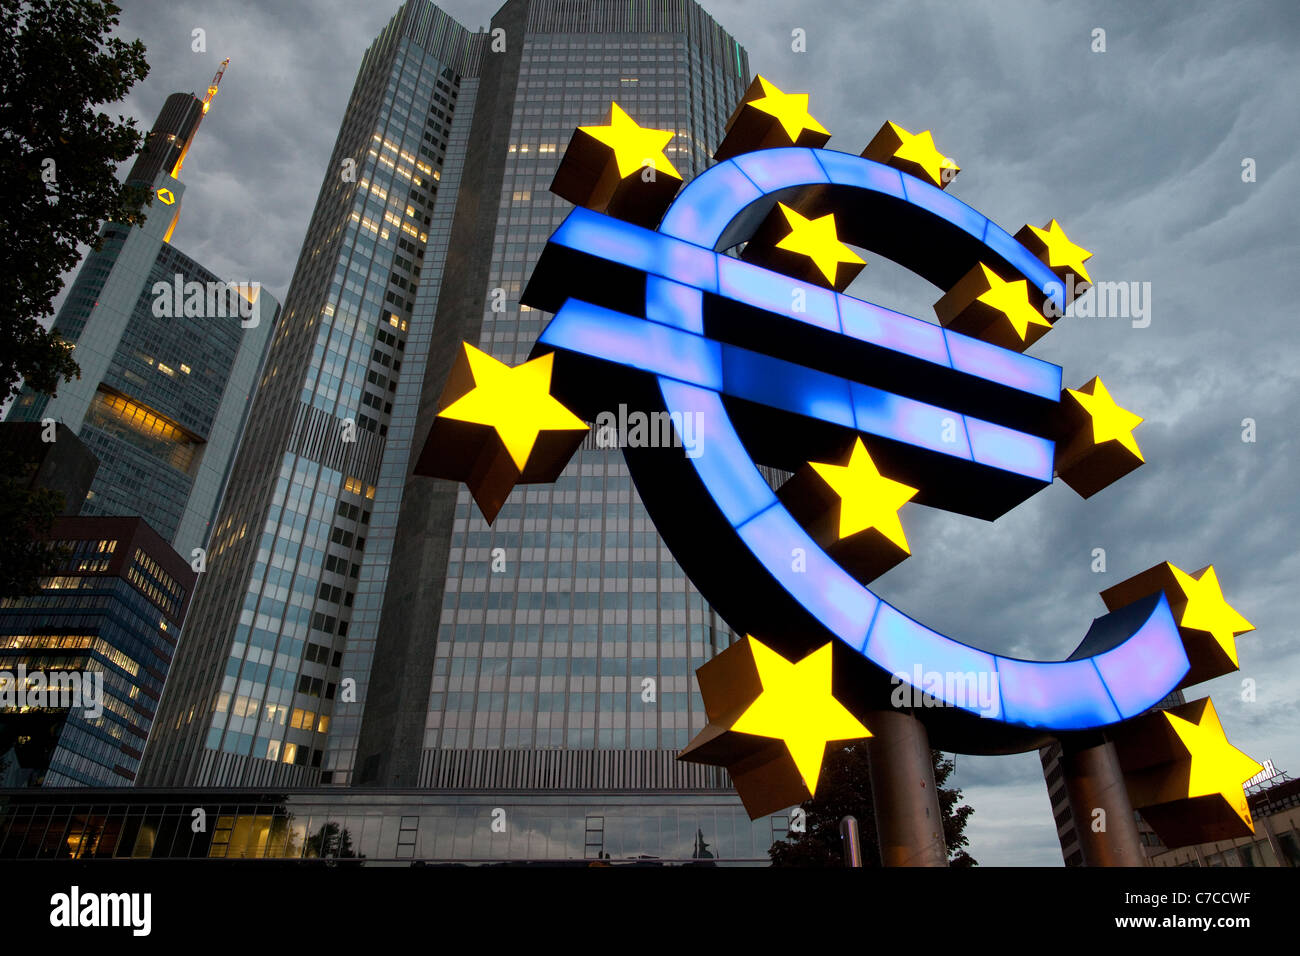 Das Euro-Zeichen, die offizielle Währung der Euro-Zone in der Europäischen Union. Foto: Jeff Gilbert Stockfoto